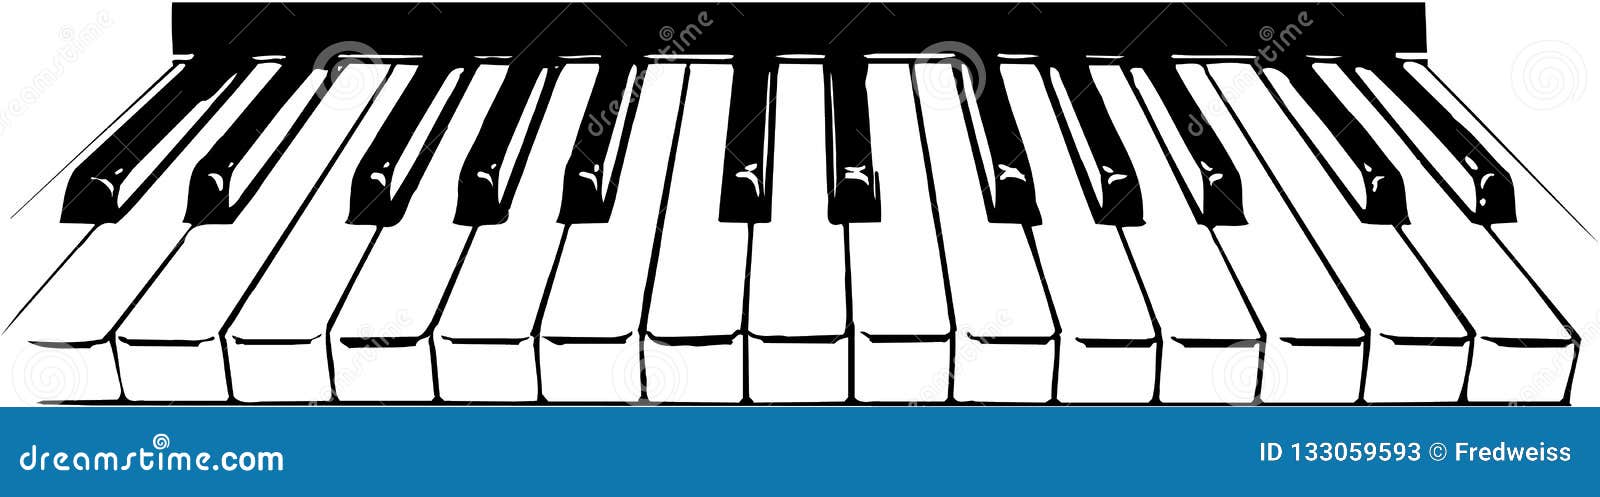 Piano Keys Illustration stock vector. Illustration of